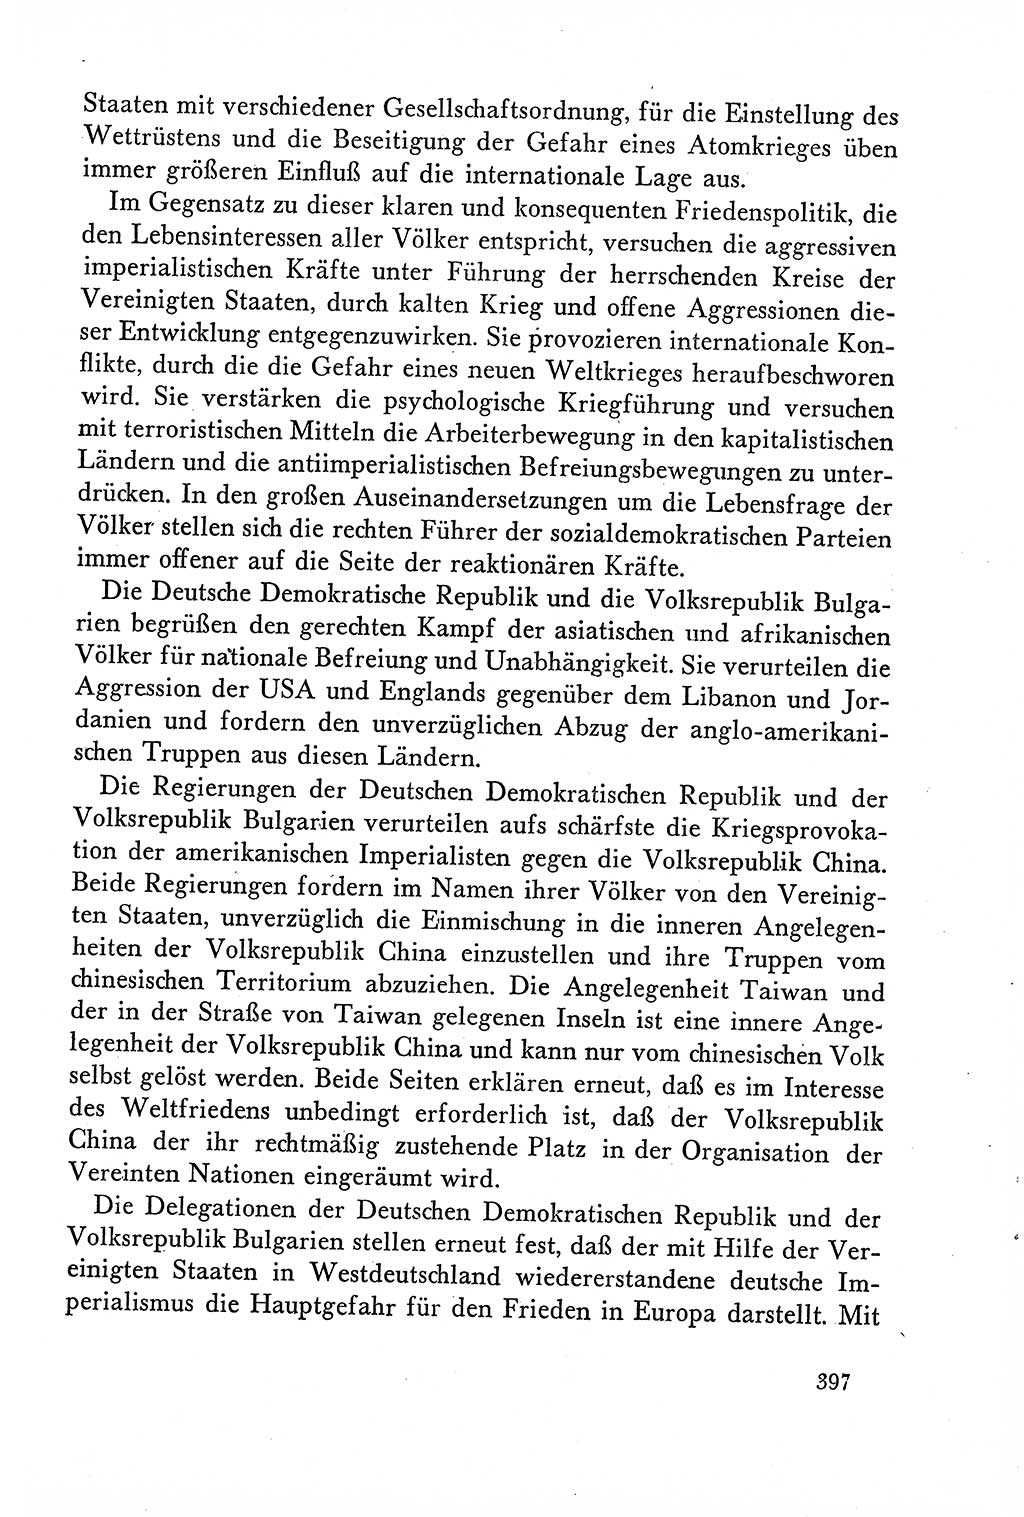 Dokumente der Sozialistischen Einheitspartei Deutschlands (SED) [Deutsche Demokratische Republik (DDR)] 1958-1959, Seite 397 (Dok. SED DDR 1958-1959, S. 397)